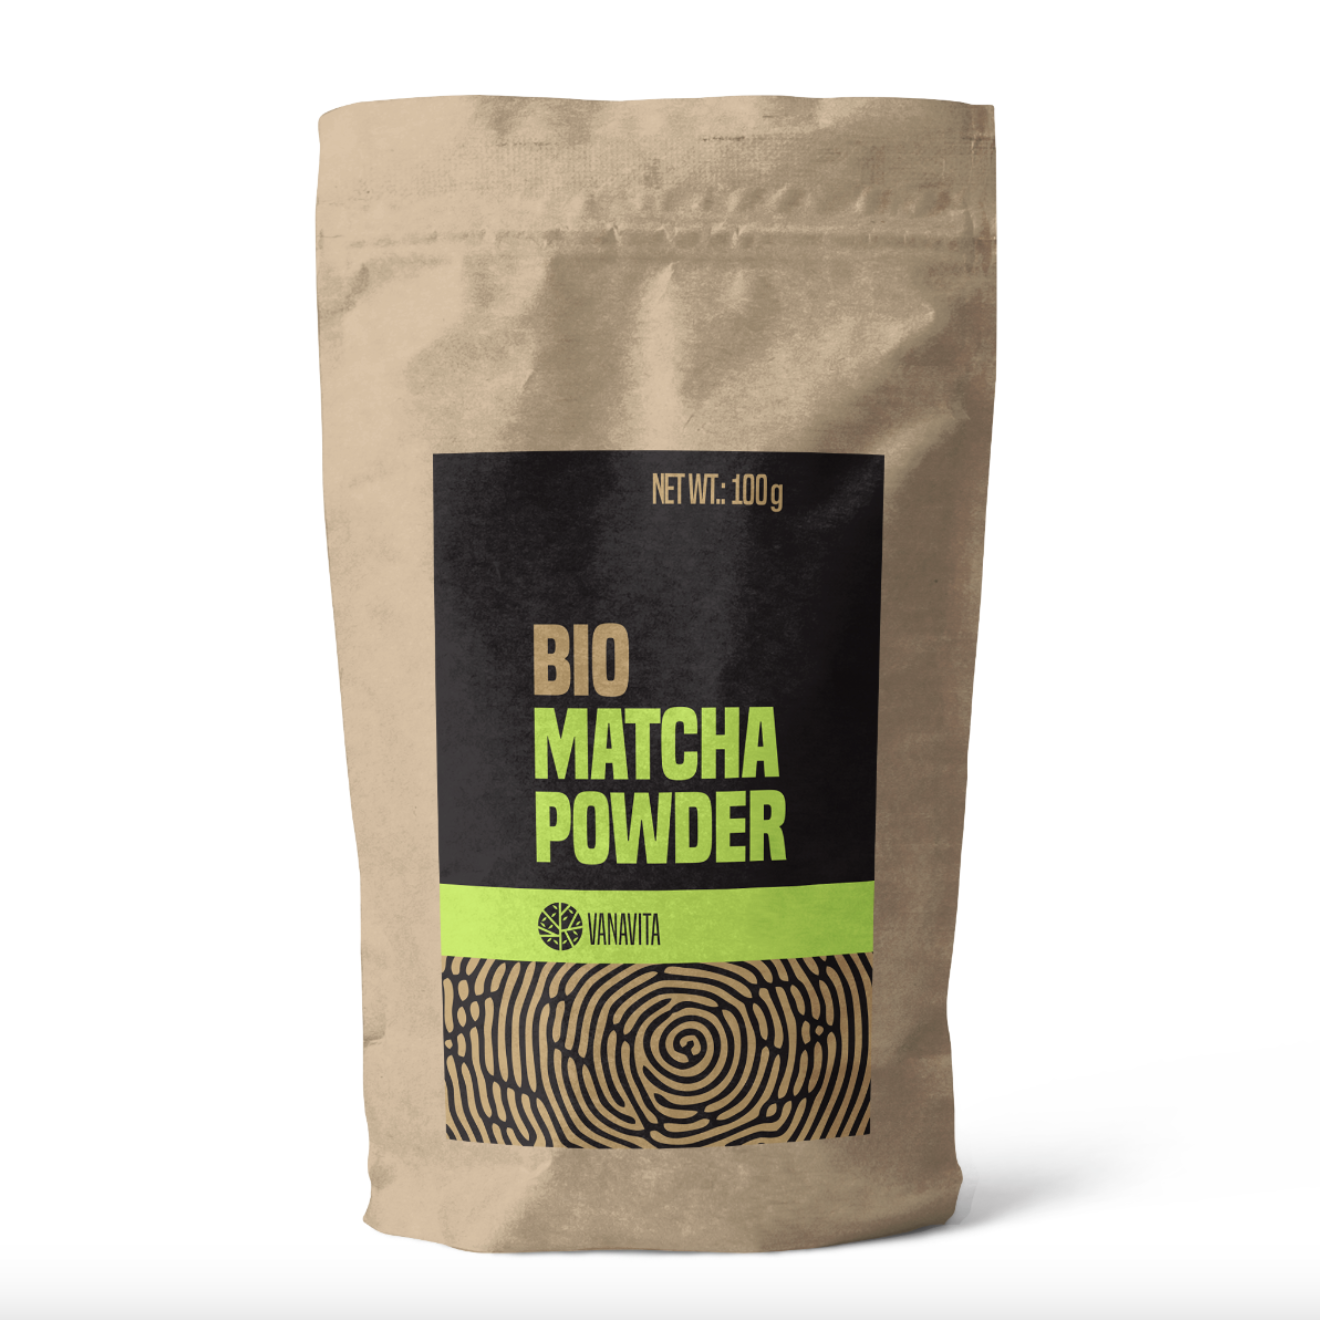 BIO Matcha Powder from VanaVita